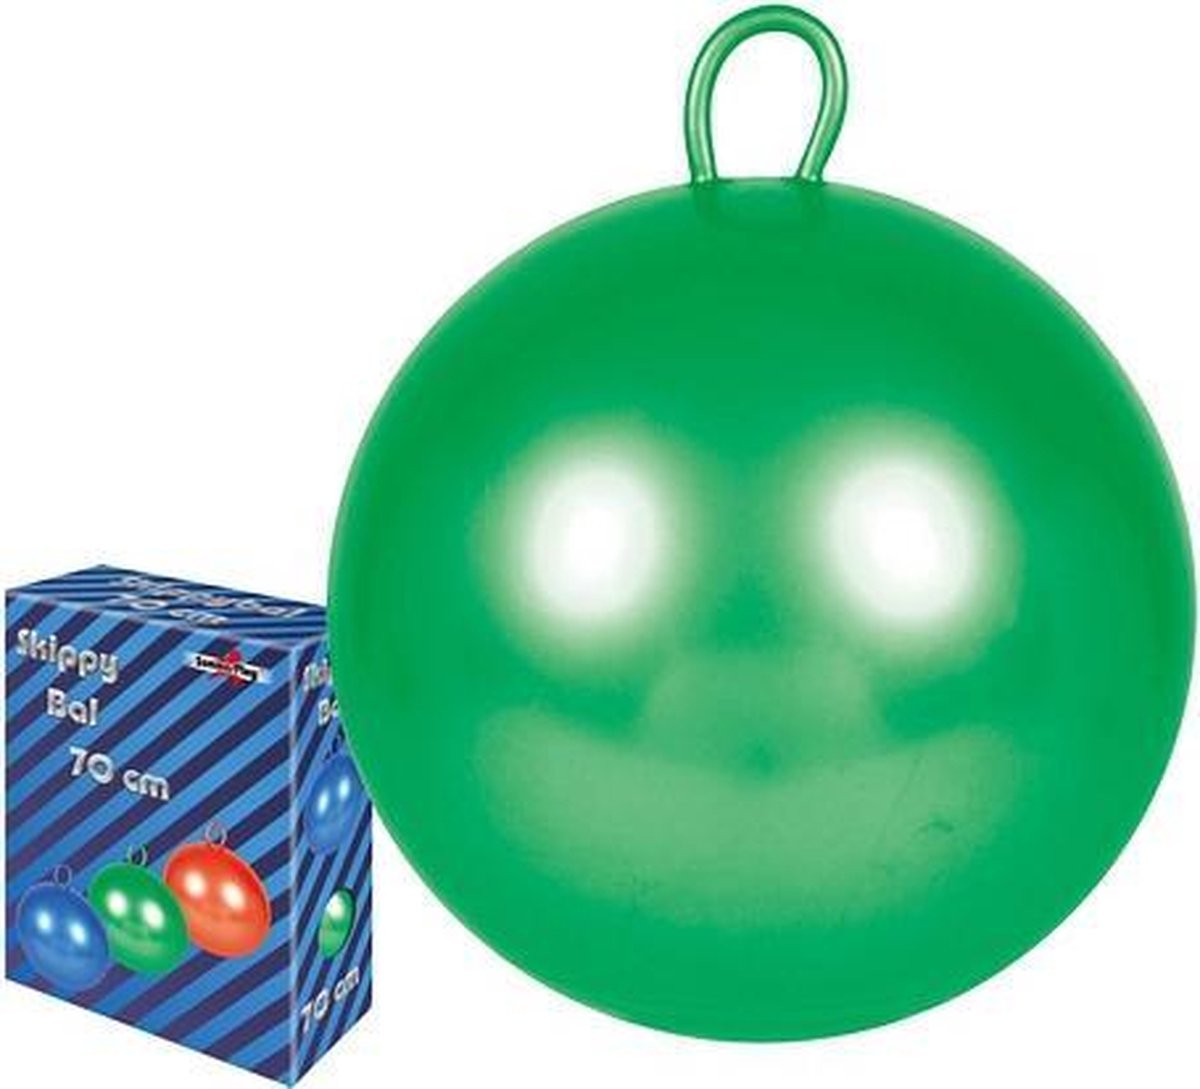 Skippybal 70 Cm Voor Kinderen - Skippyballen Buitenspeelgoed Voor Jongens/meisjes - Groen